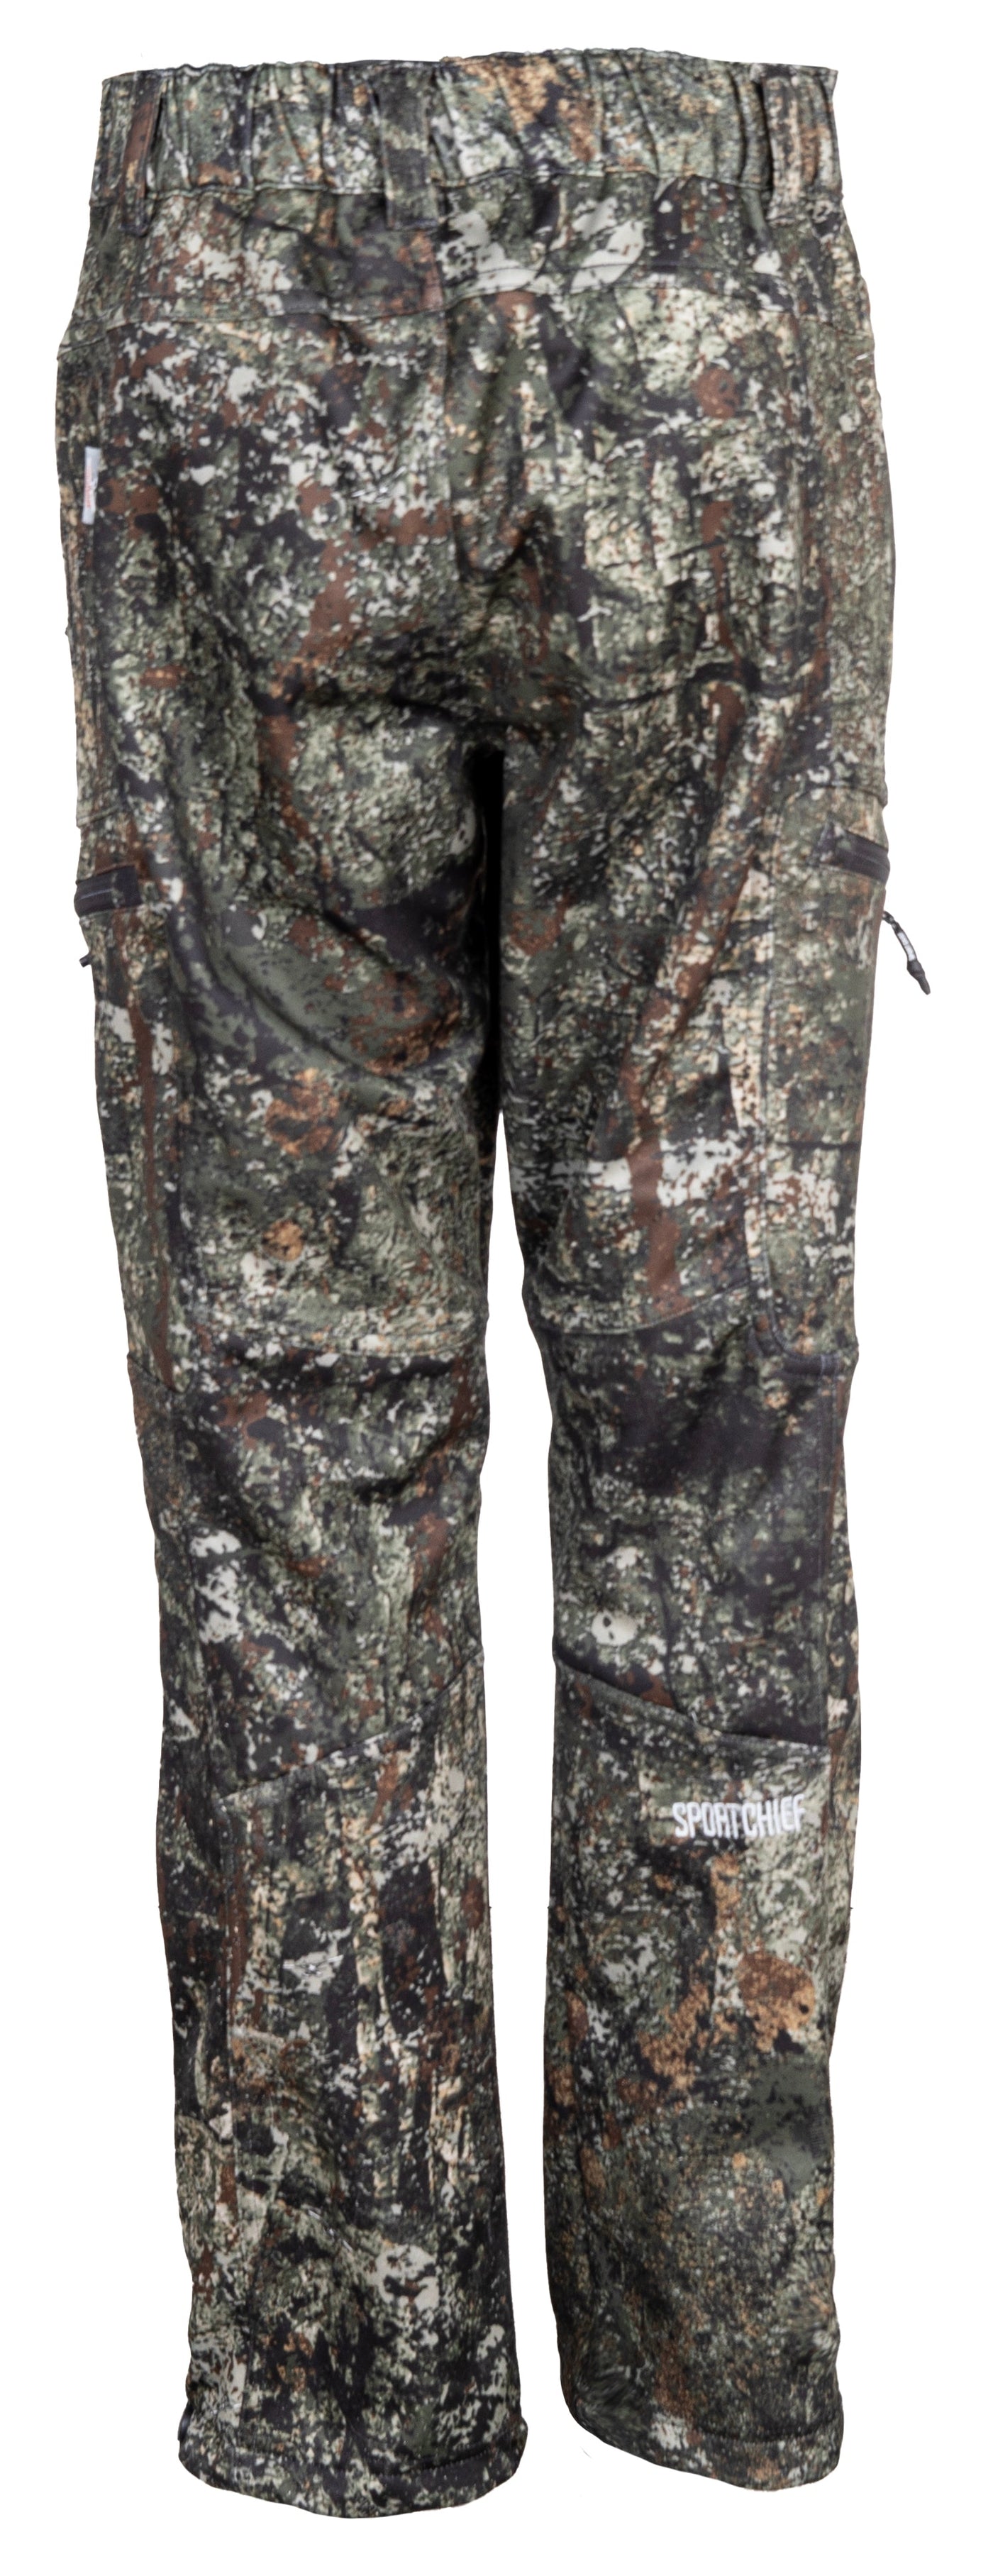 Pantalon camo de chasse femme Collection "Bête de chasse" Jason T. Morneau - Sportchief